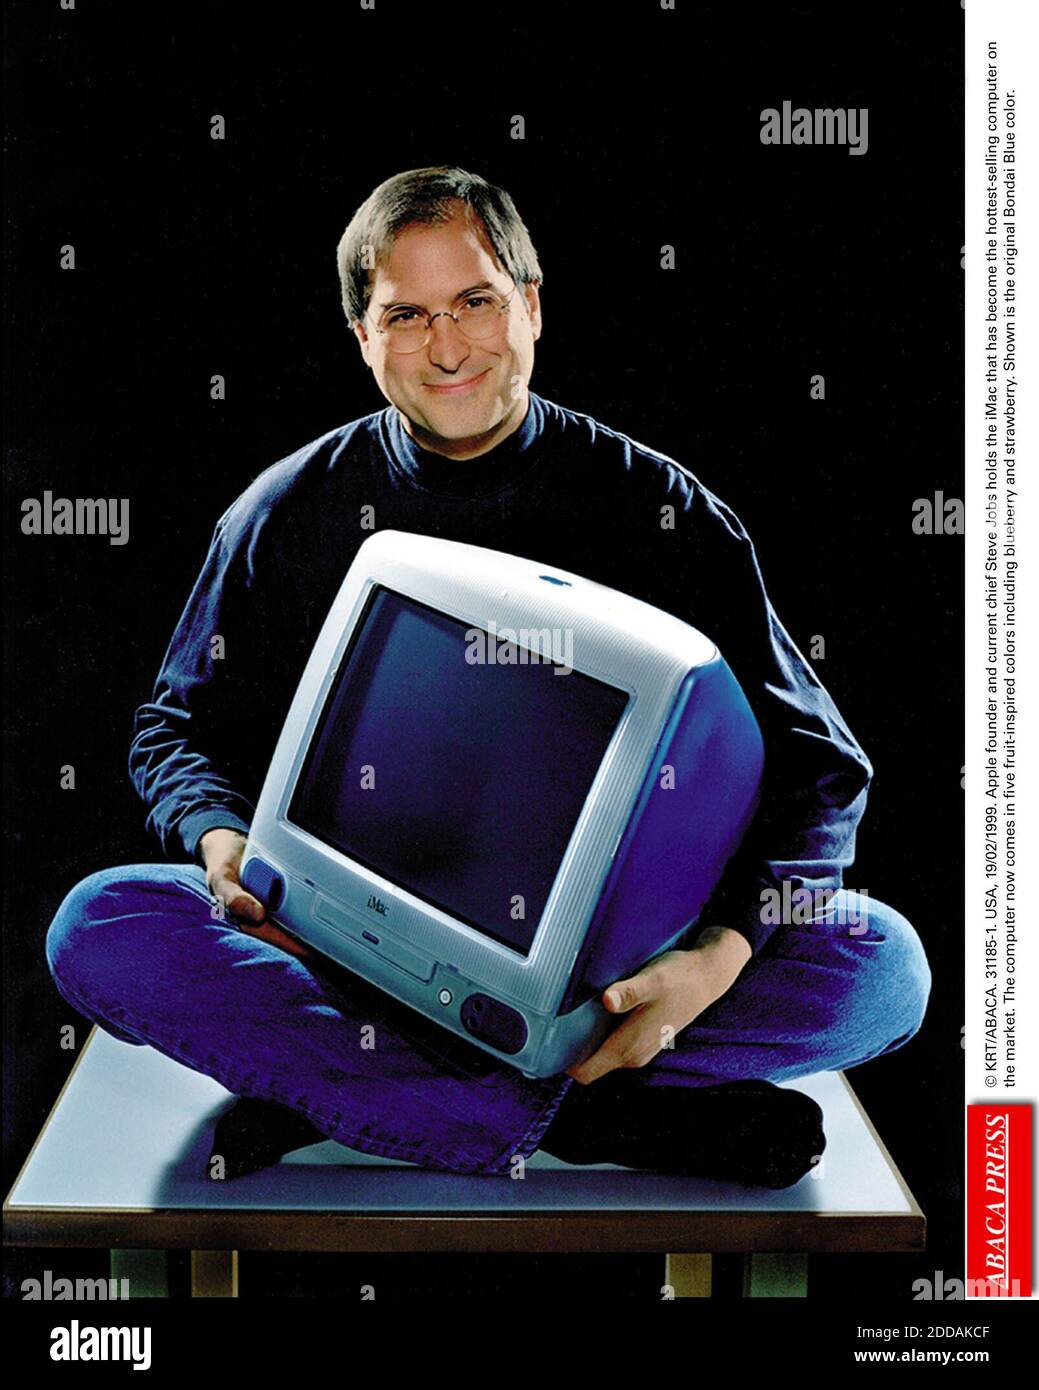 PAS DE FILM, PAS DE VIDÉO, PAS DE TV, PAS DE DOCUMENTAIRE - © KRT/ABACA.  31185-1. ÉTATS-UNIS, 19/02/1999. Le fondateur d'Apple et actuel chef Steve  Jobs détient l'iMac qui est devenu l'ordinateur